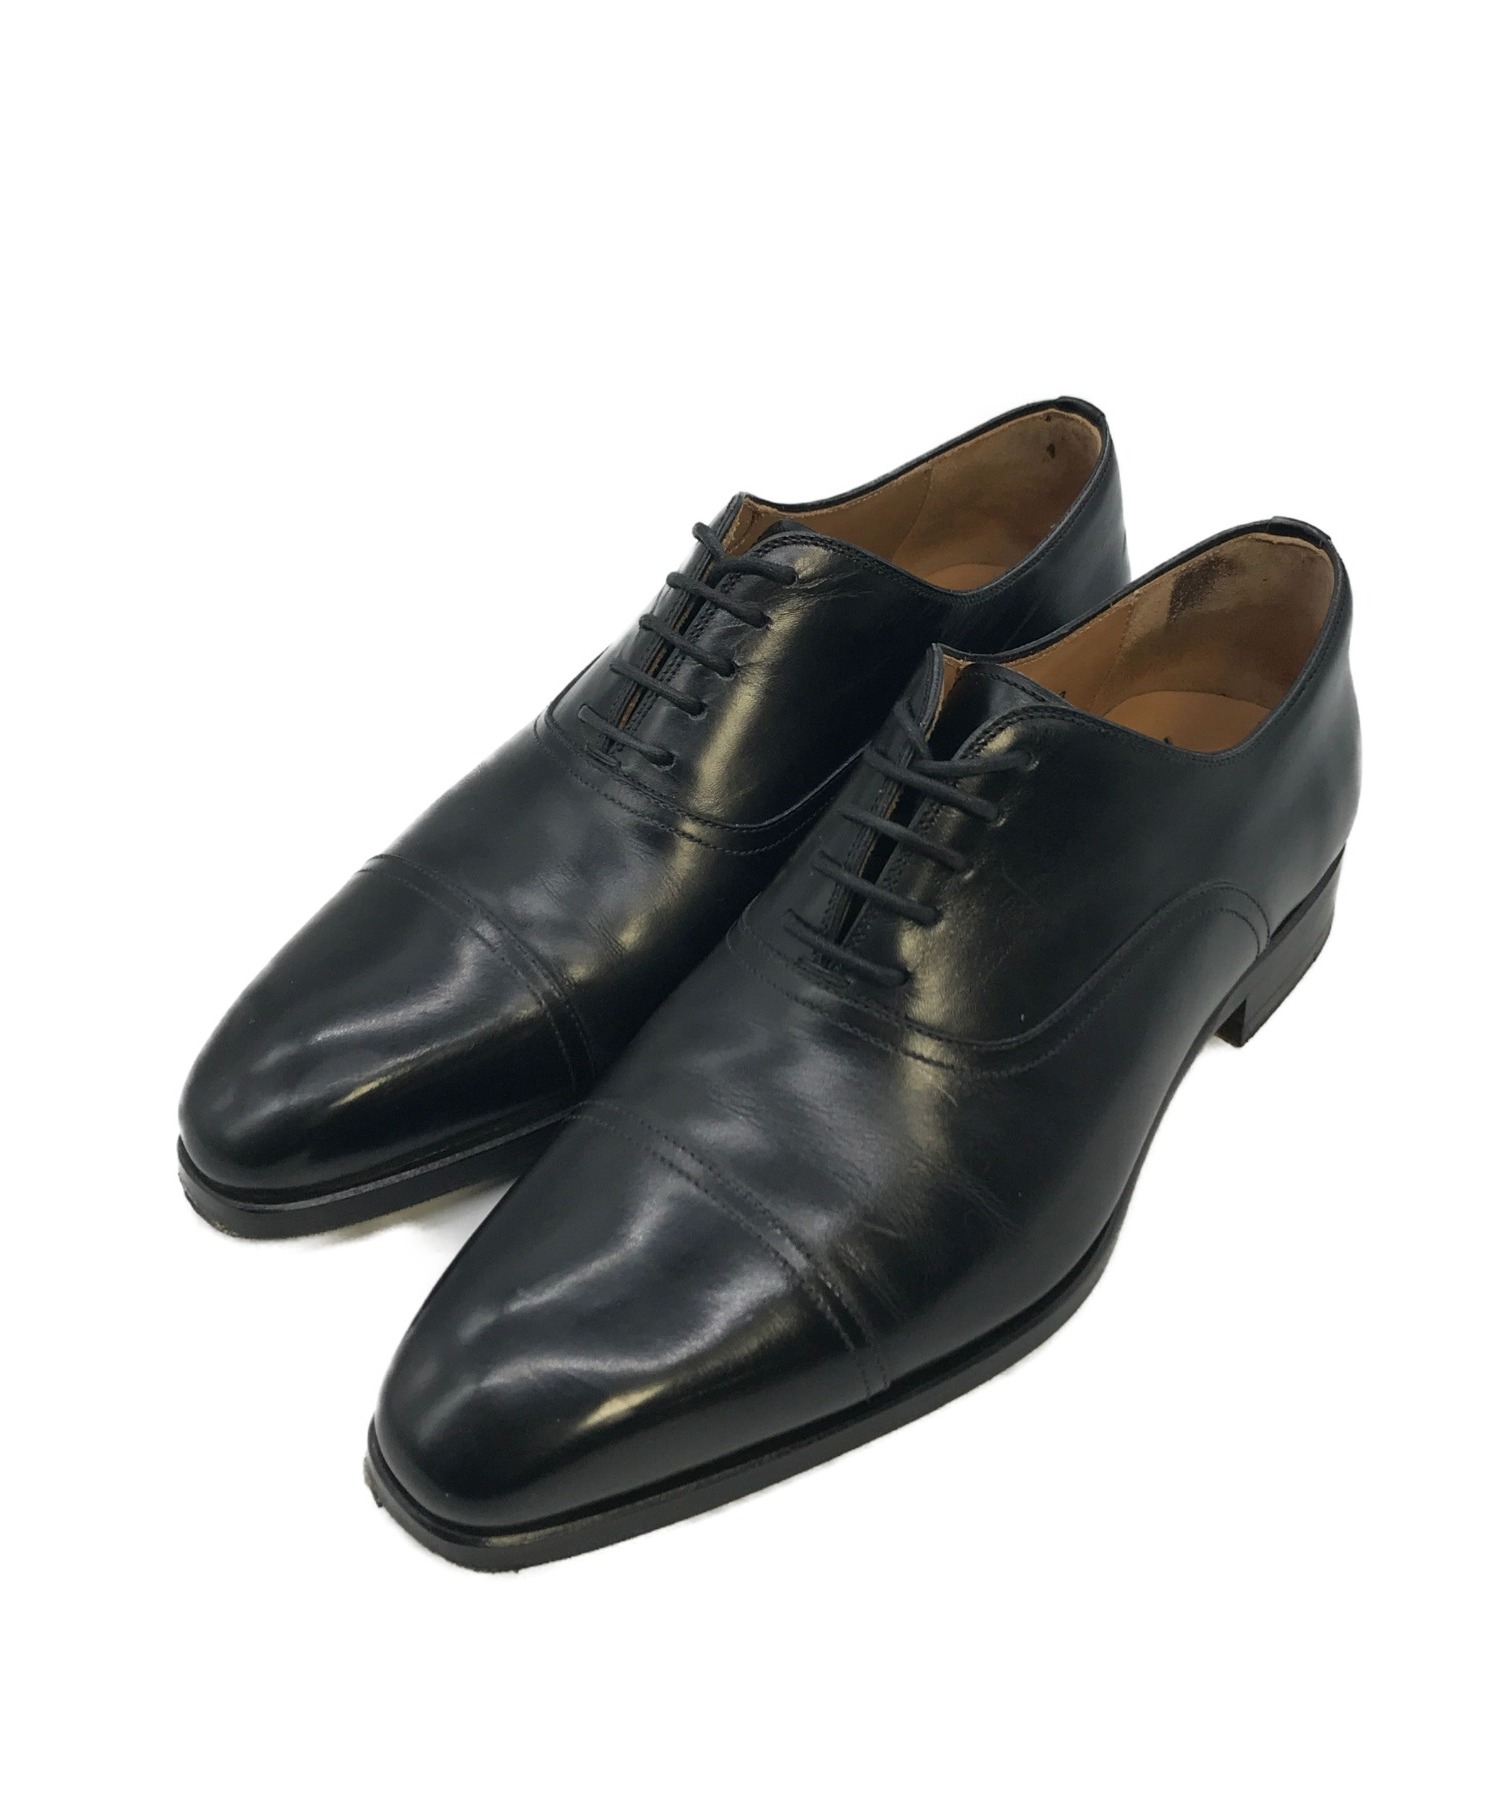 マグナーニ ストレートチップシューズ 革靴 サイズ39 - ドレス/ビジネス